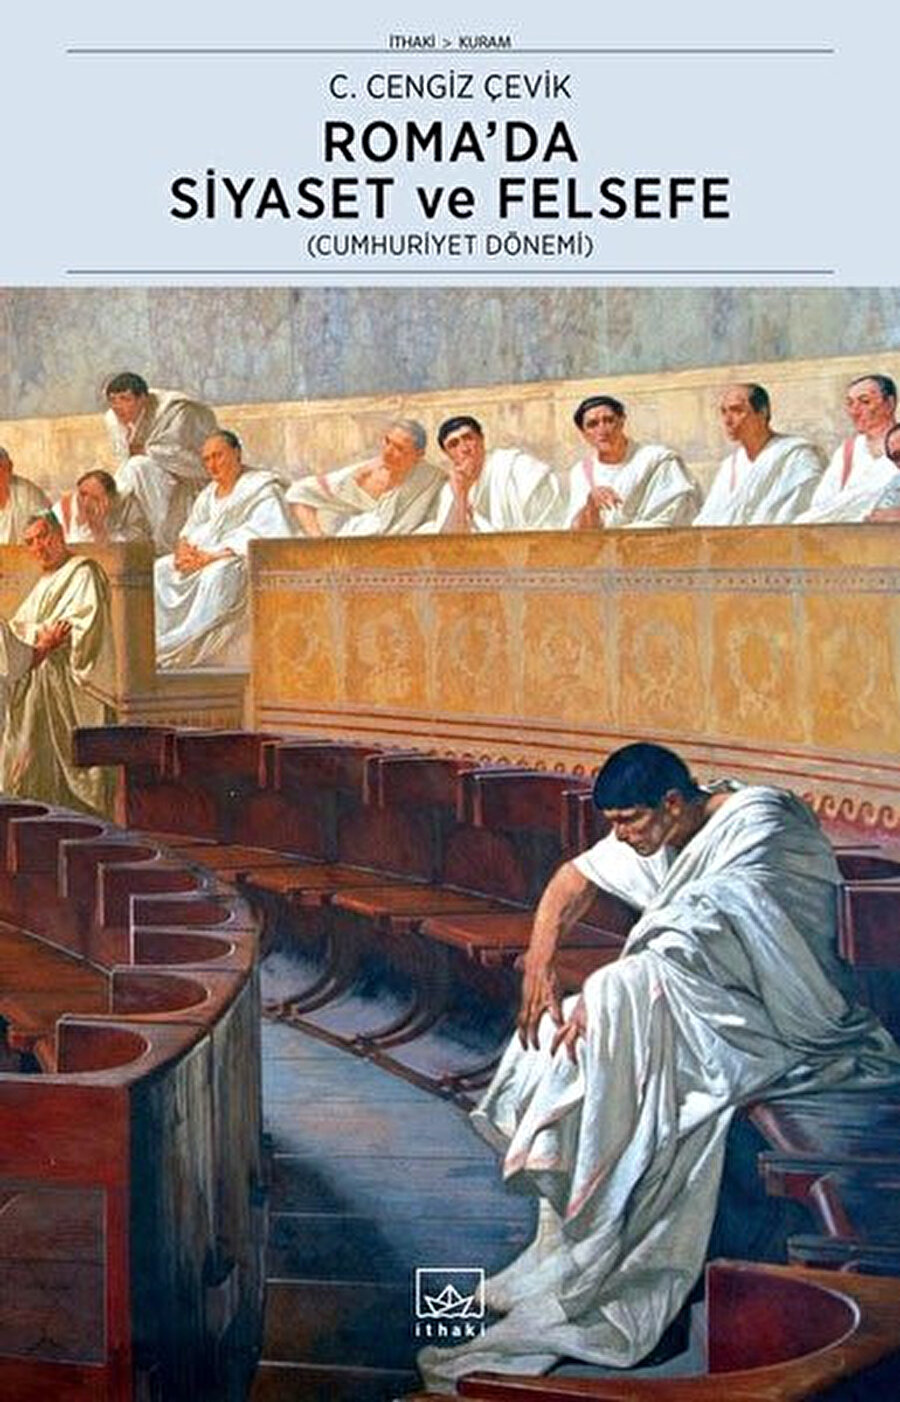 Roma’da Siyaset ve Felsefe, C. Cengiz Çevik, İthaki Yayınları